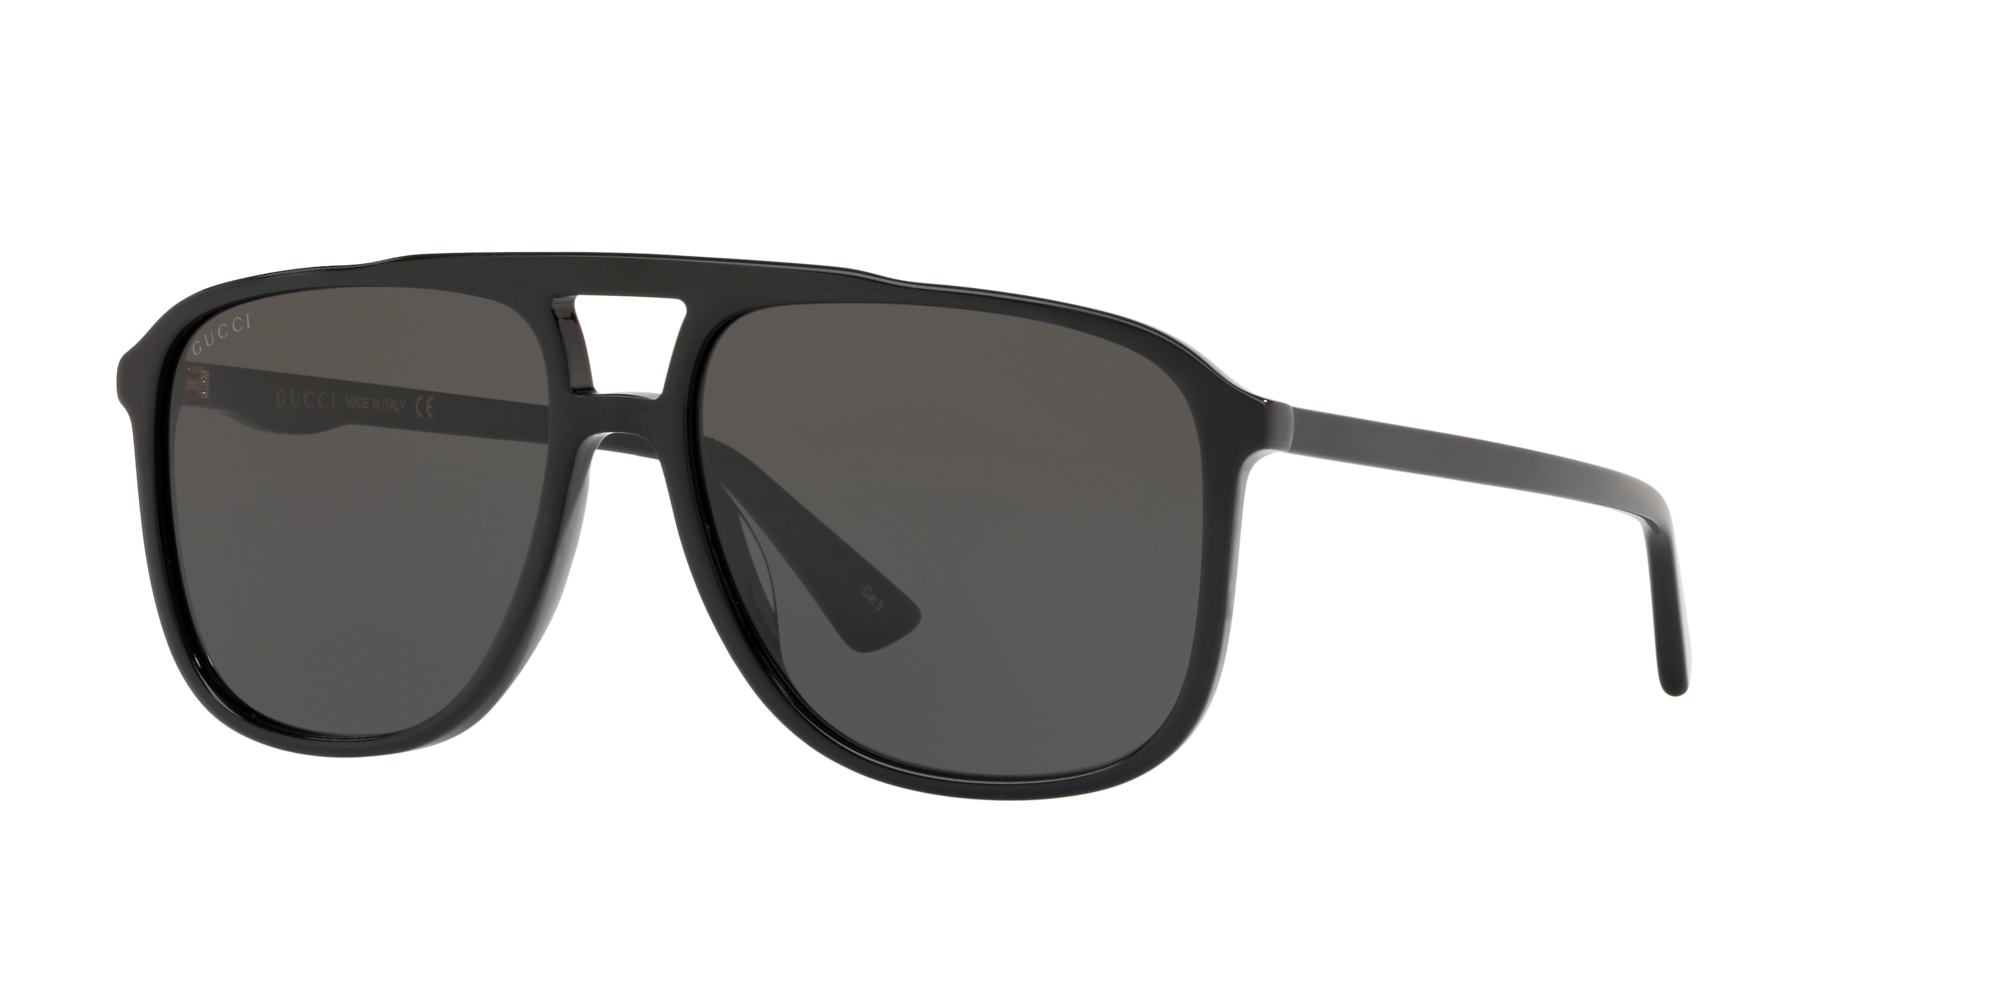 gucci sunglasses gg0262s